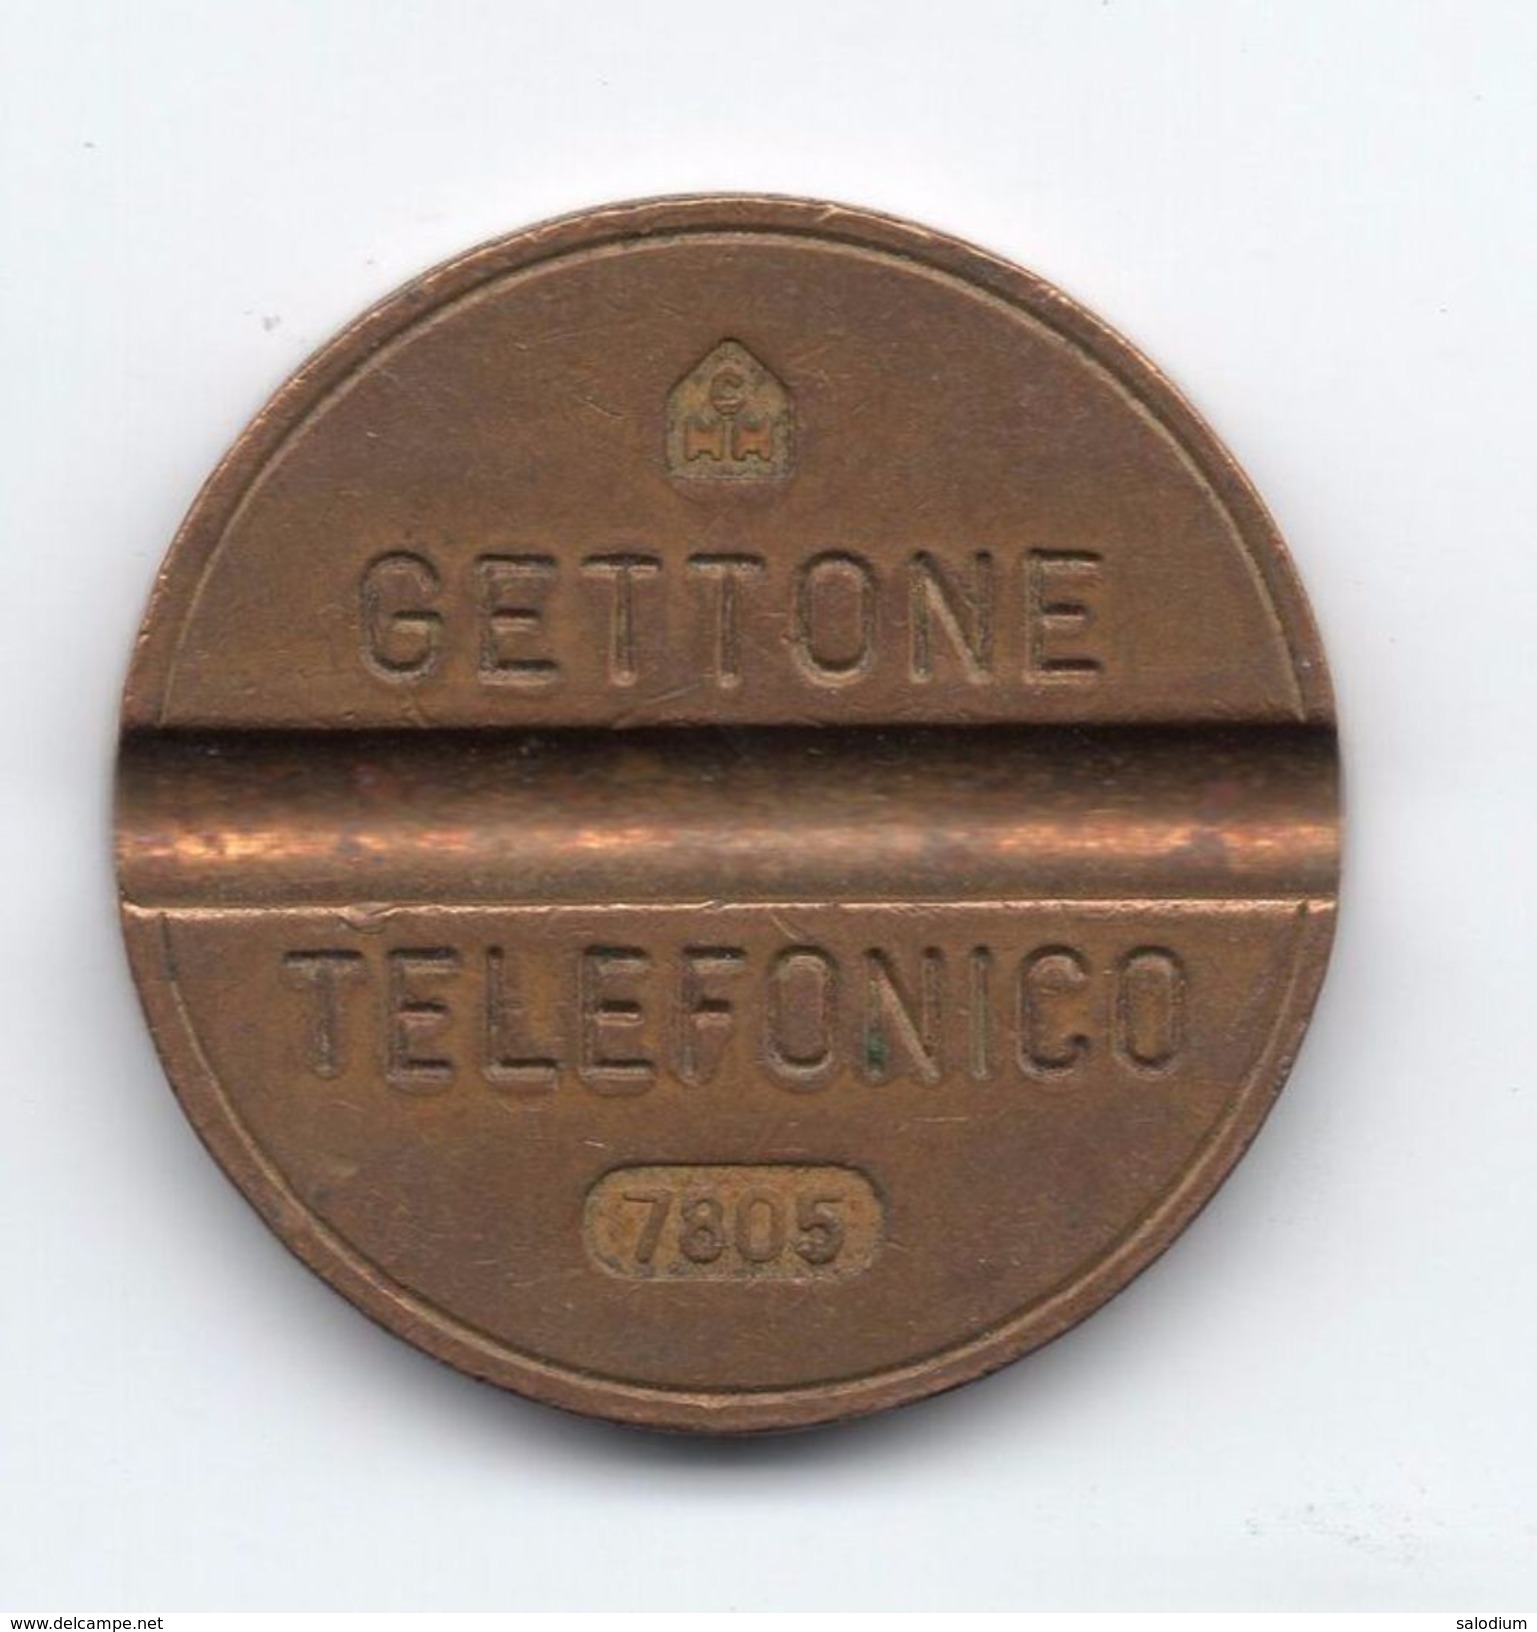 Gettone Telefonico 7805 Token Telephone - (Id-802) - Professionnels/De Société